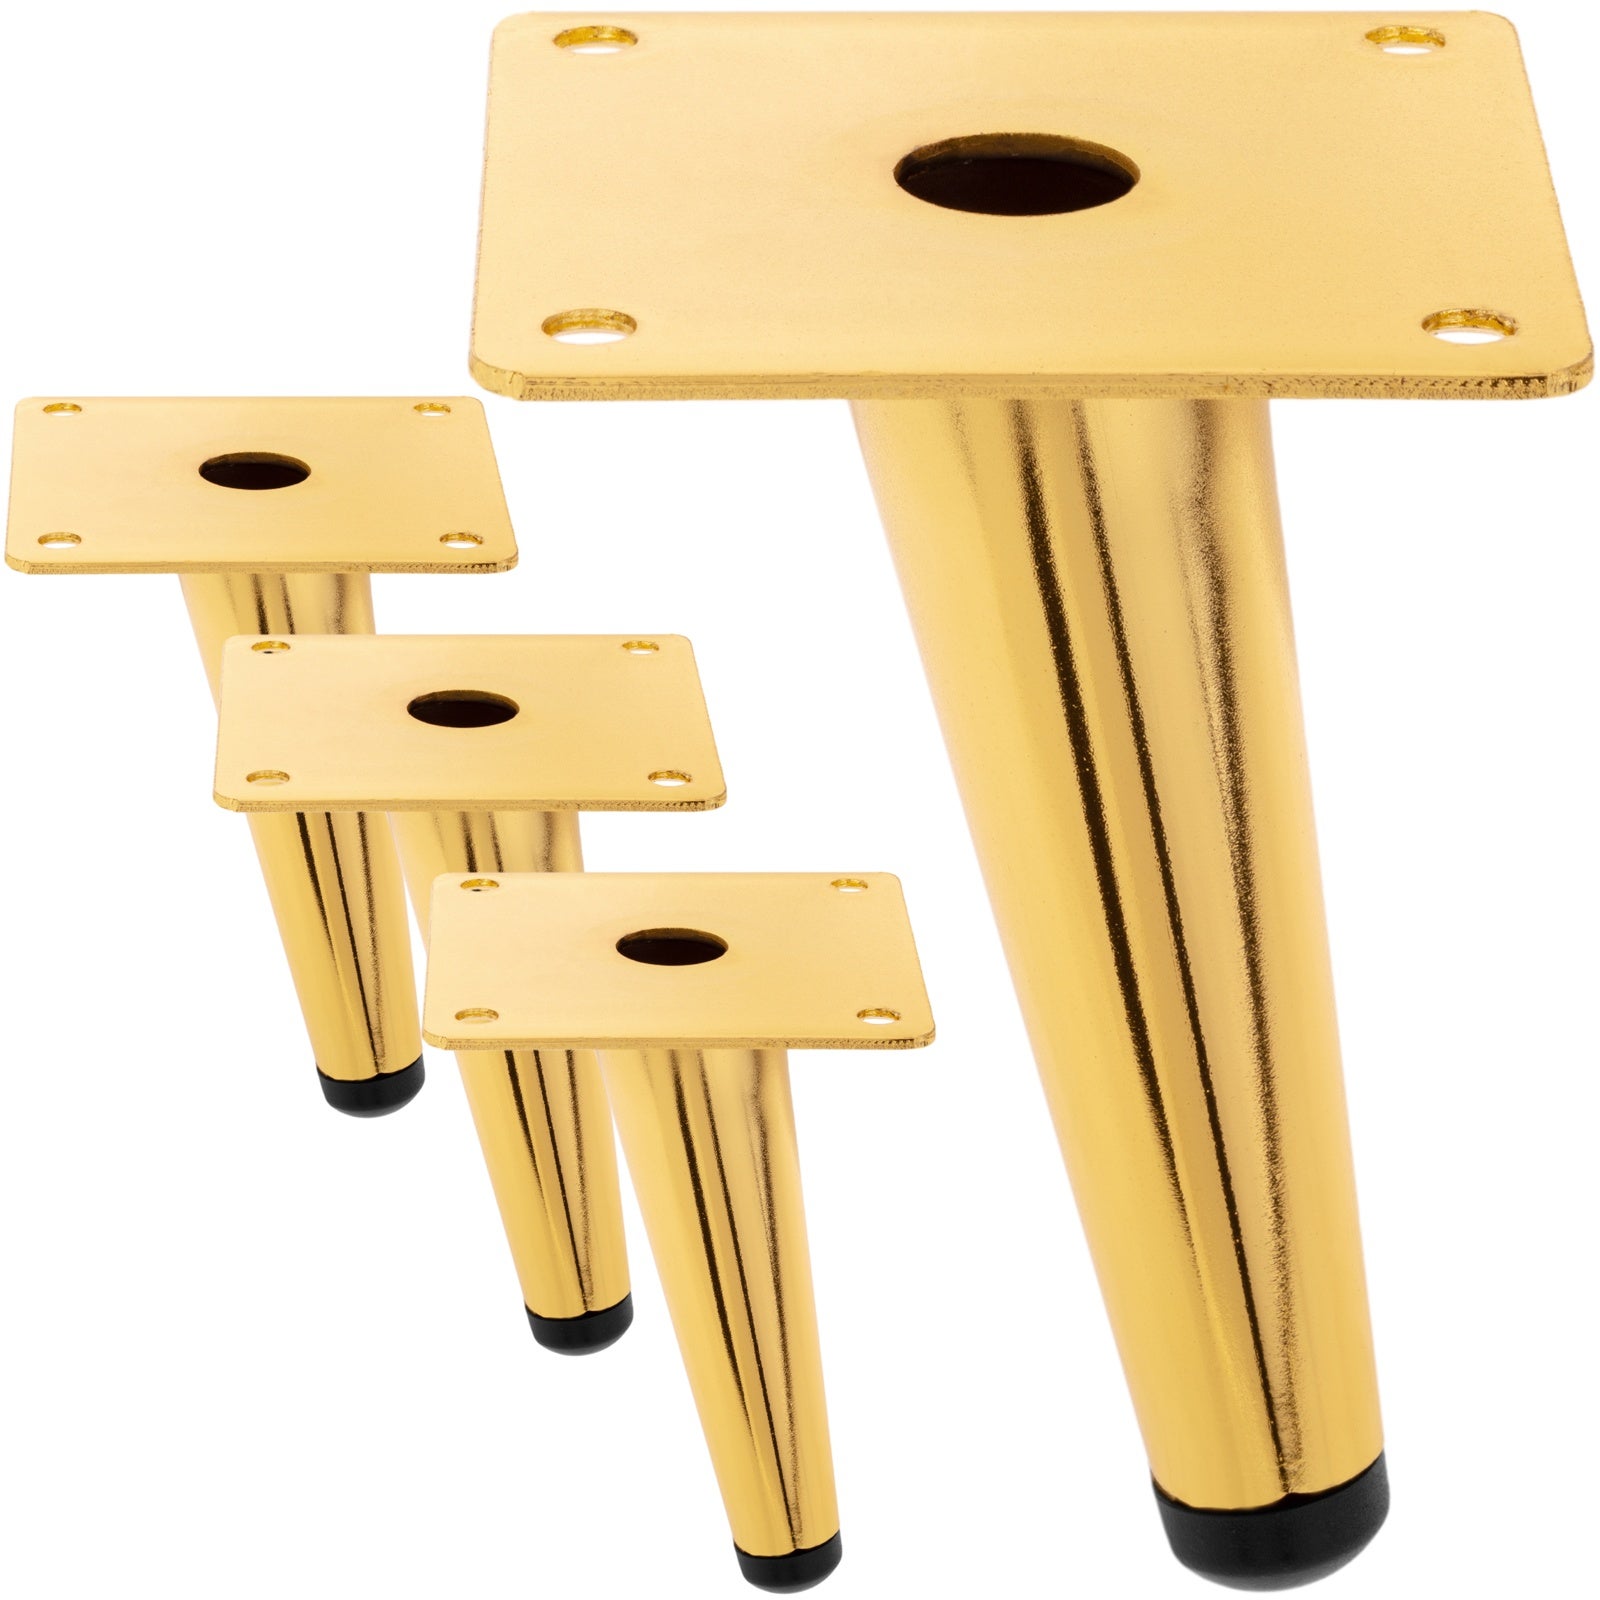 Pack de 4 patas cónicas rectas de repuesto para muebles de 20 cm doradas